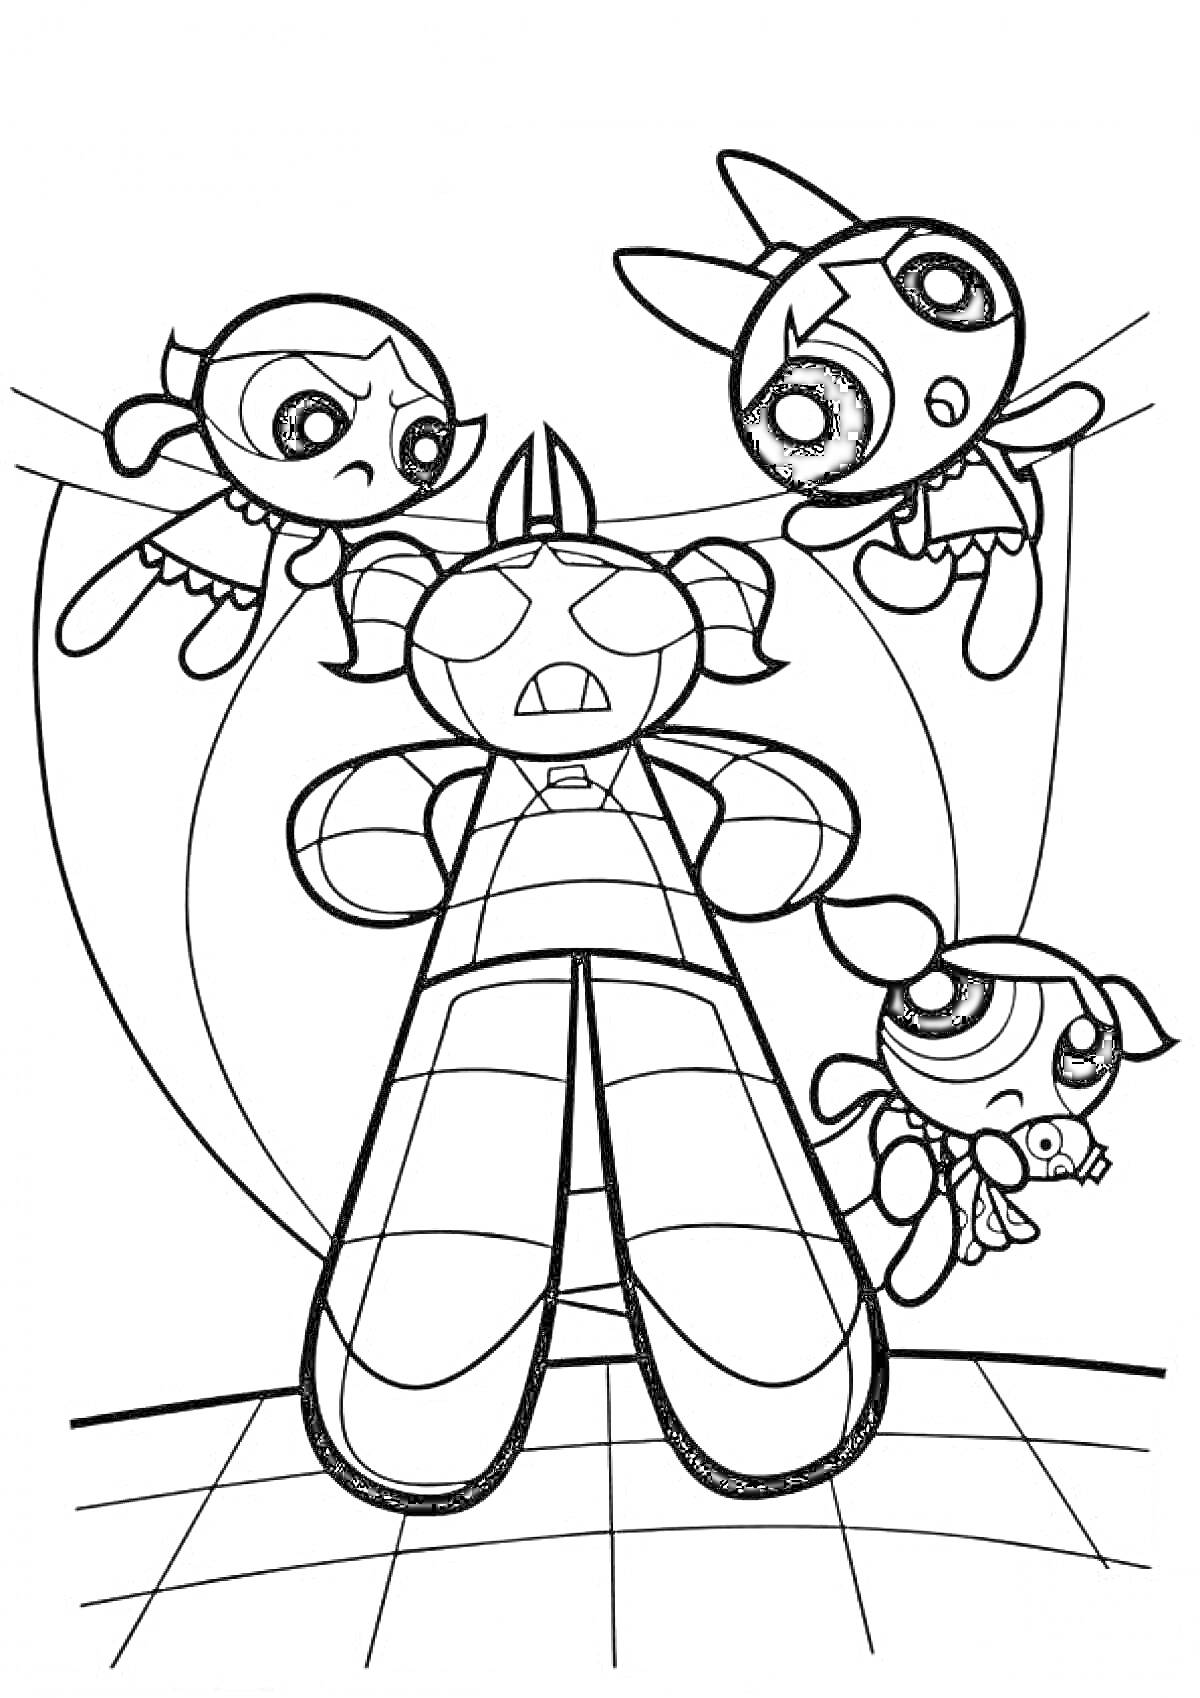 Суперкрошки атакуют огромного робота, трое девочек-супергероев в воздухе вокруг робота, робот в центре изображения с круговыми линиями сзади